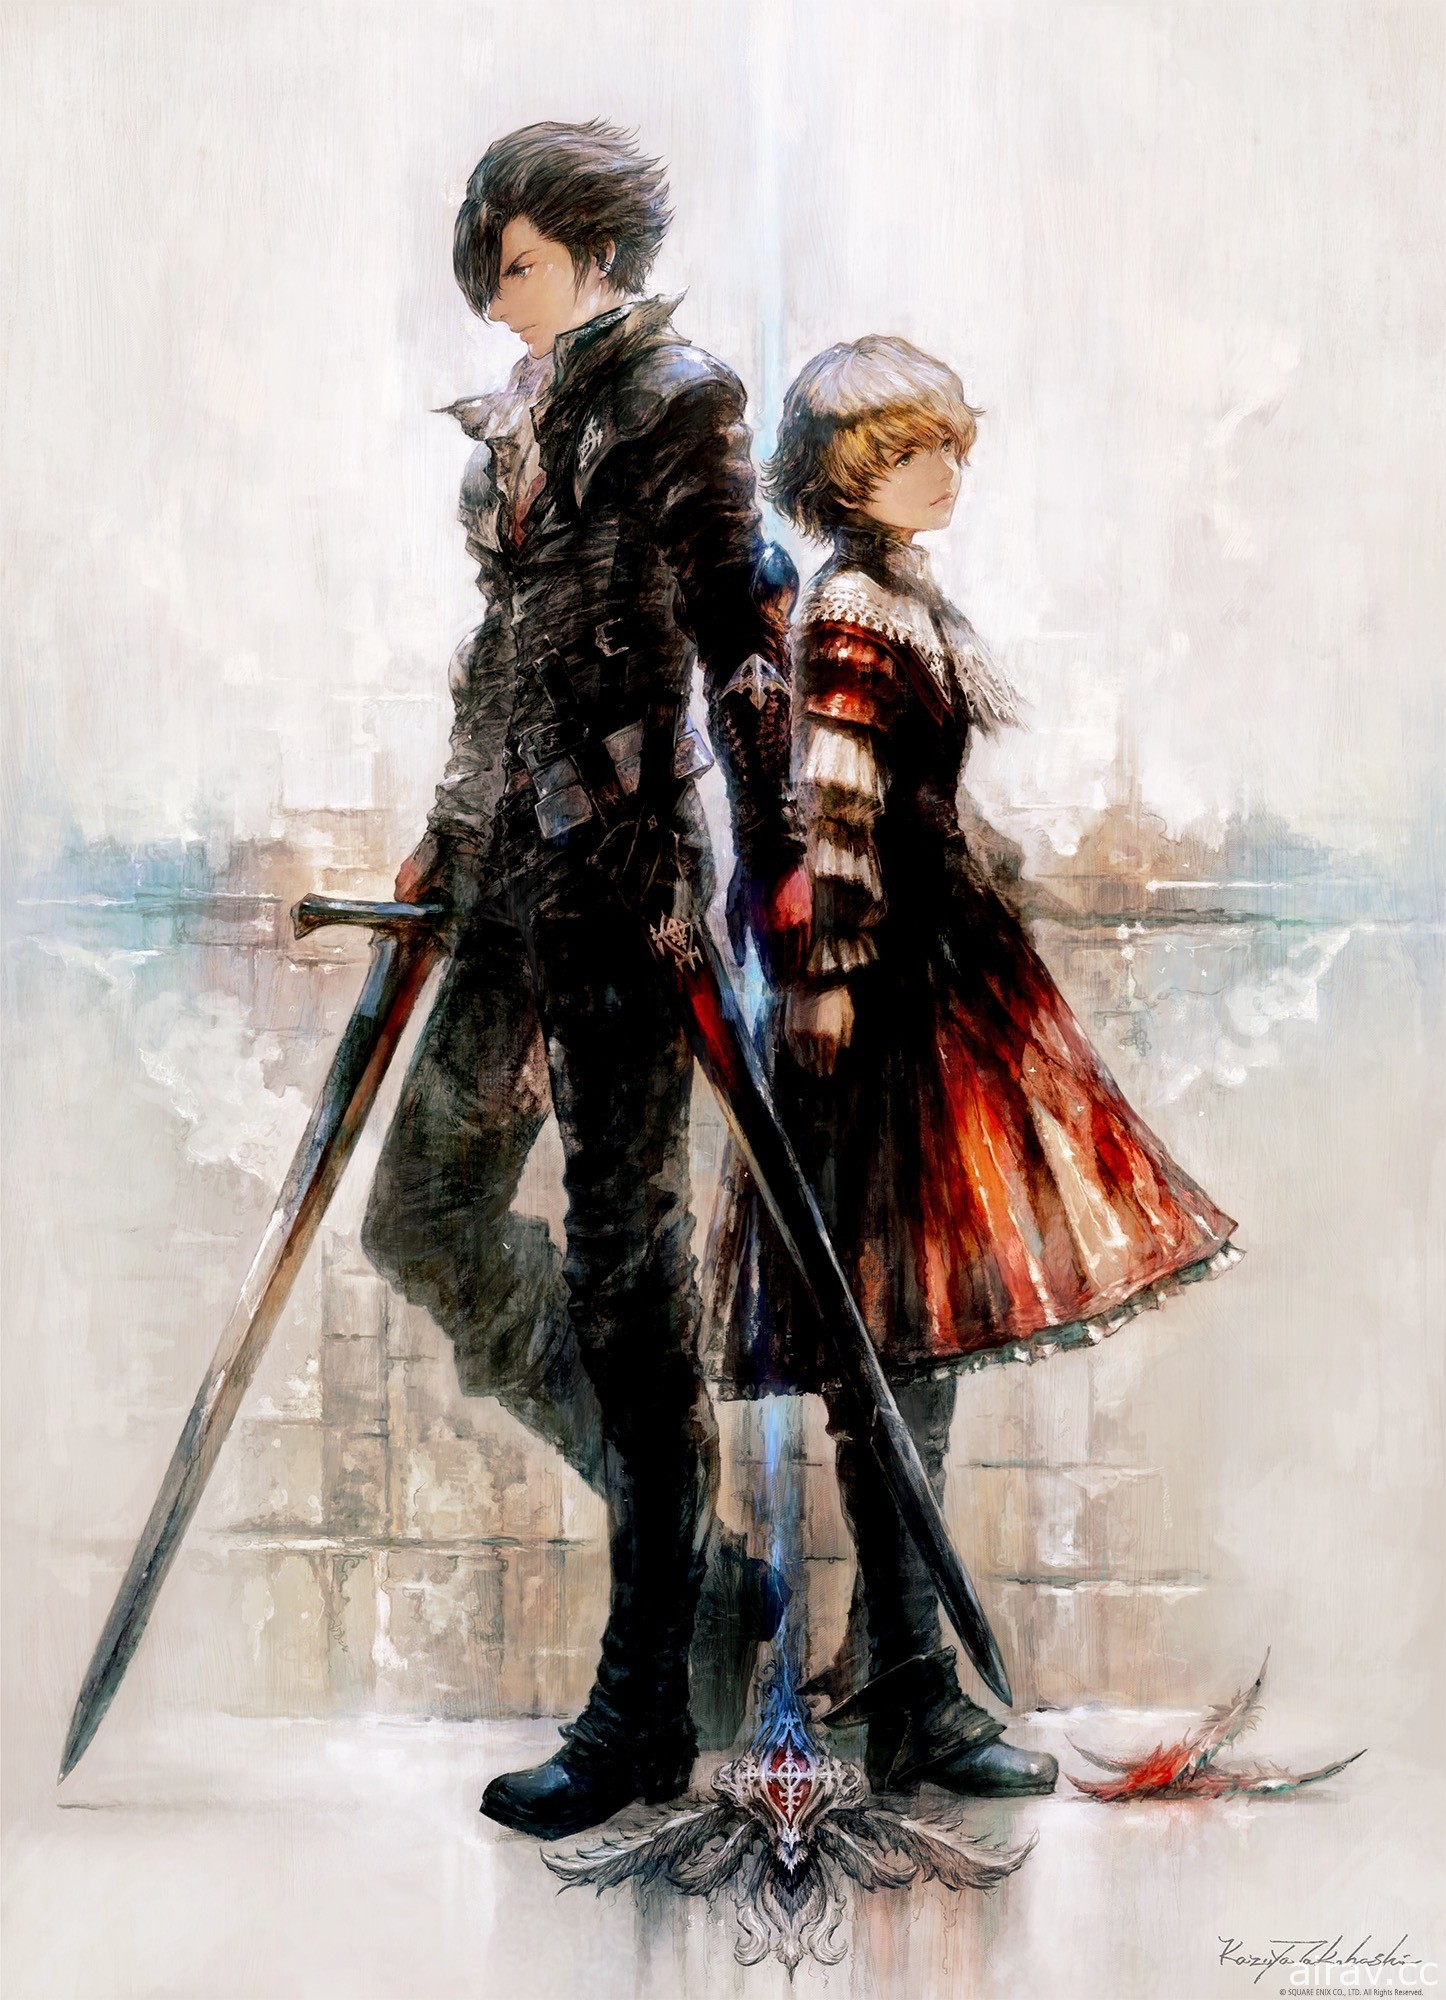 《Final Fantasy XVI》官方網站開張 釋出主視覺插畫與世界觀、主角介紹